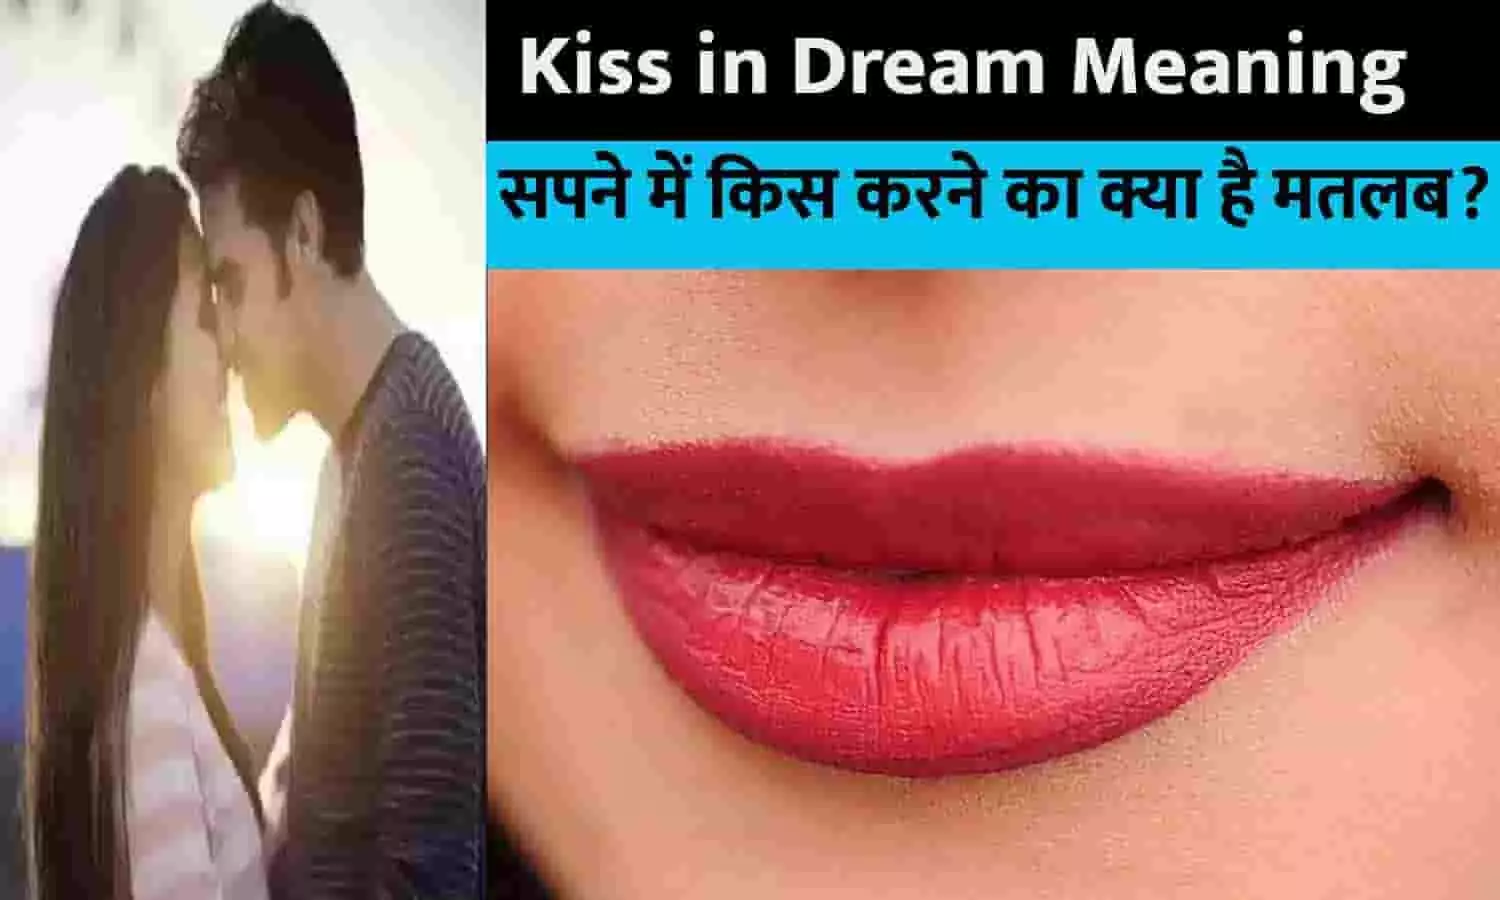 Sapne Mein Kisi Ko Kiss Karte Dekhne Ka Matlab: सपने में किस करने का क्या है मतलब फटाफट यहाँ से जानें?